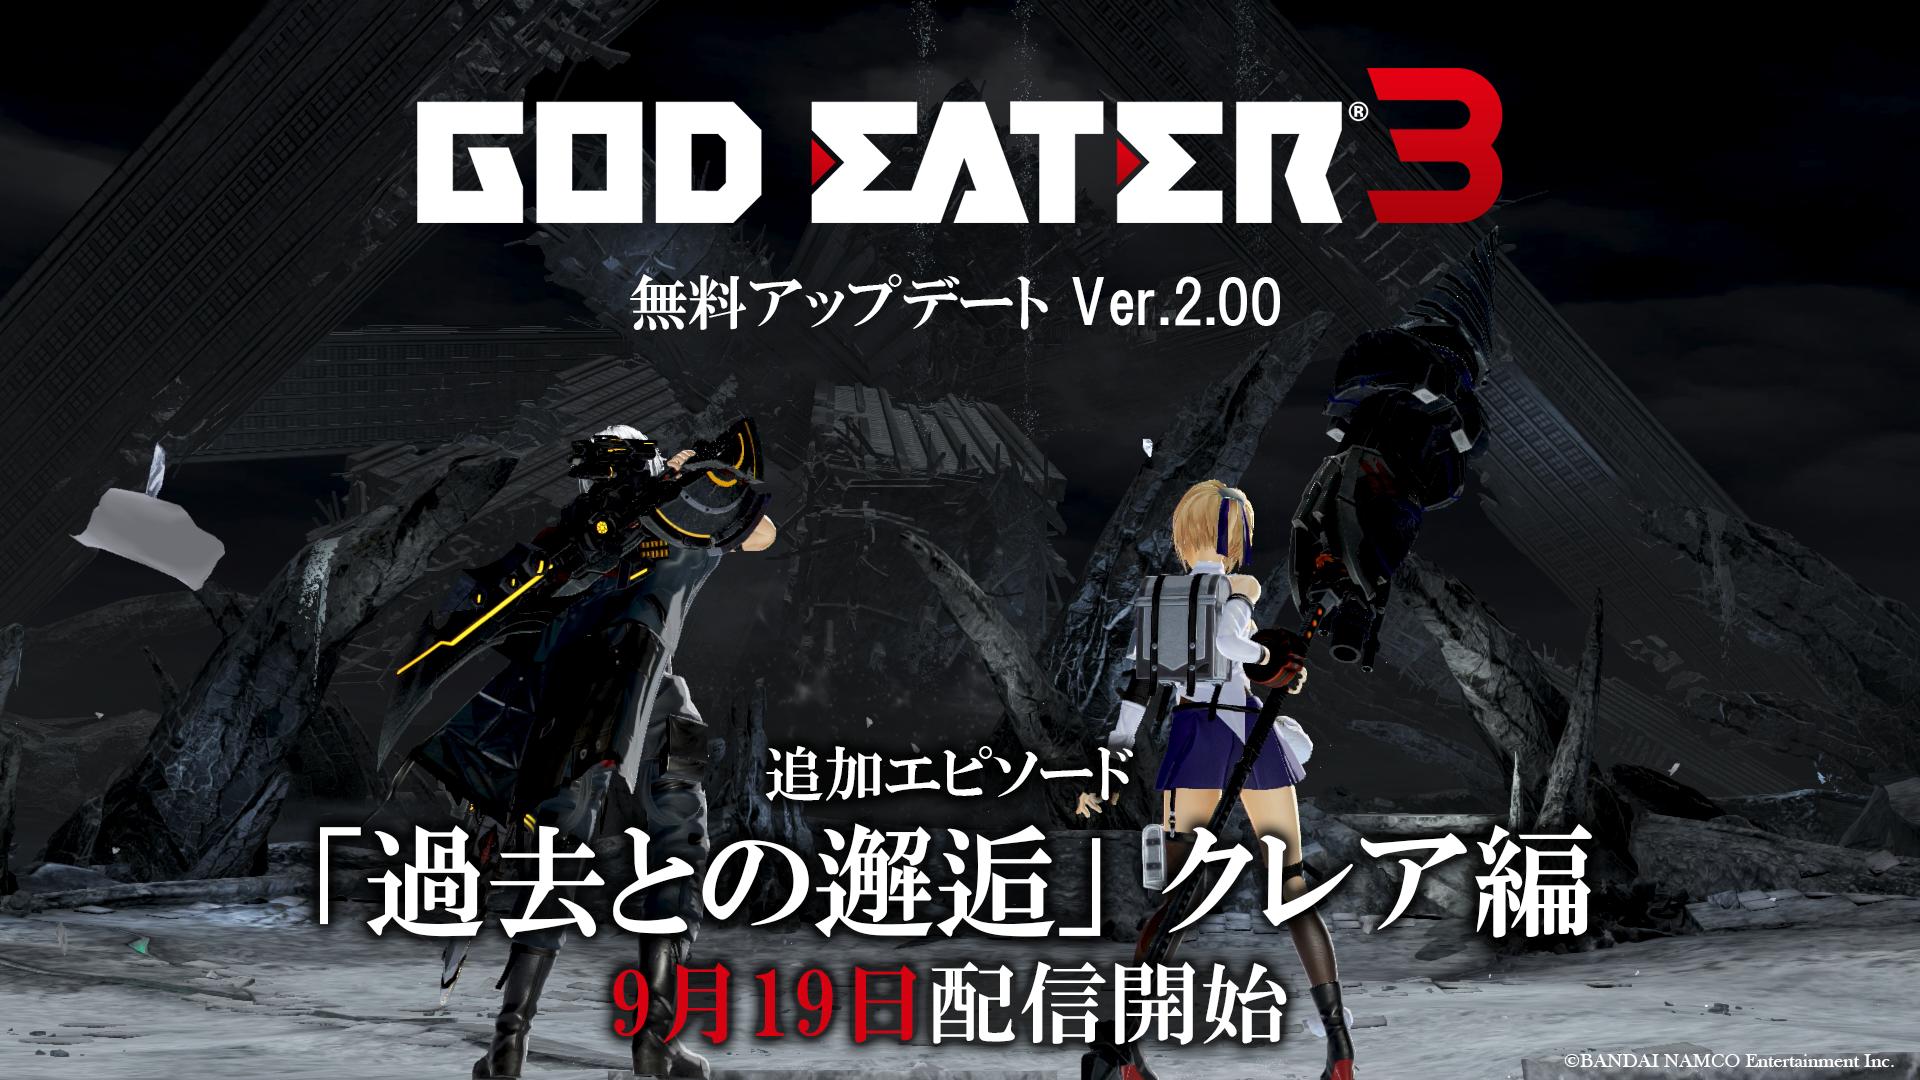 2.0 Pembaruan untuk God Eater 3 Meluncurkan 19 September